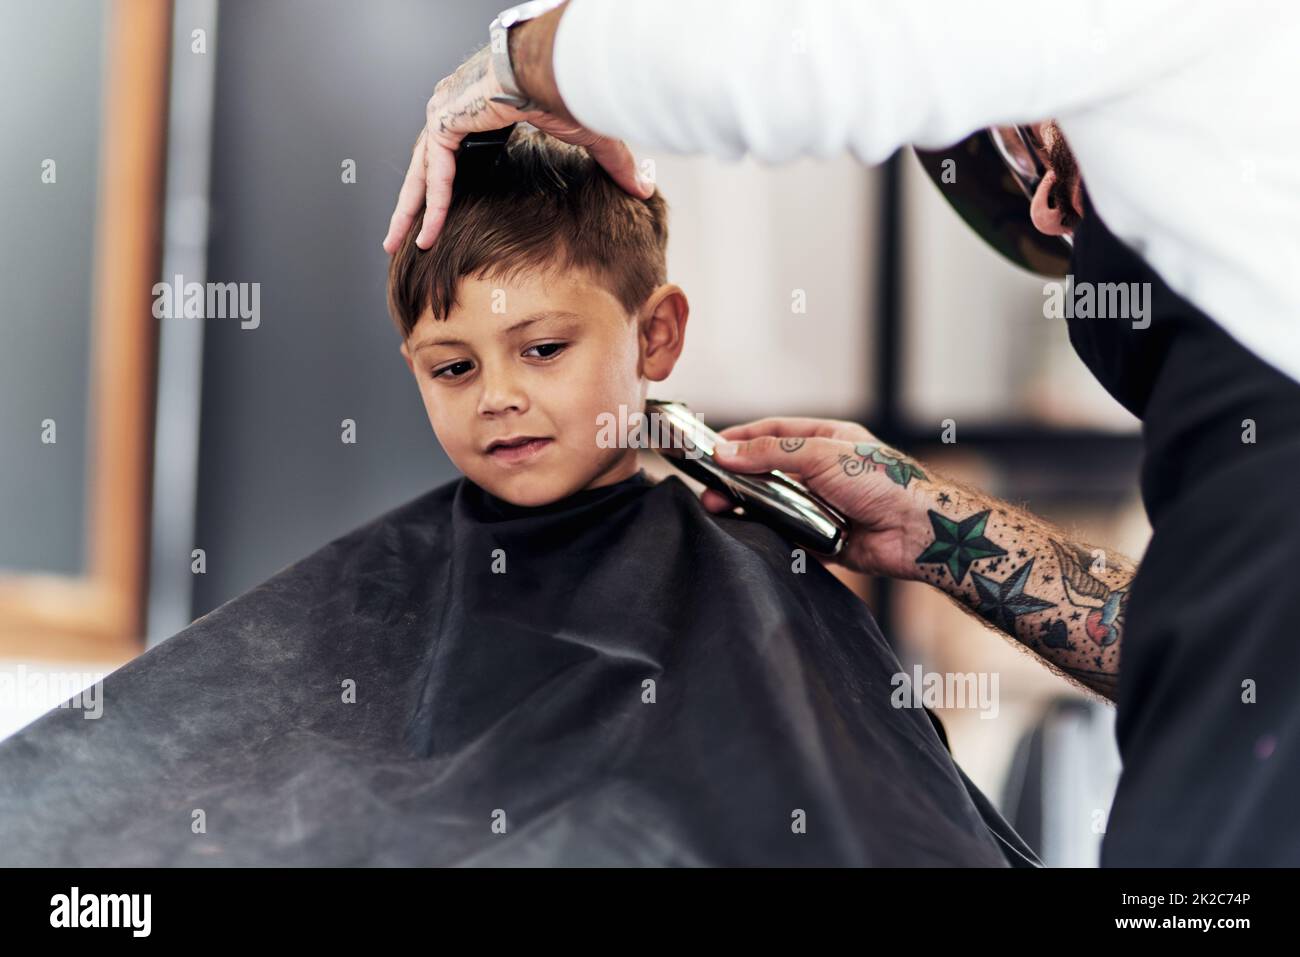 Große Jungen weinen nicht, wenn sie einen Haarschnitt bekommen. Cropped schoss einen entzückenden kleinen Jungen, der im Friseurladen einen Haarschnitt bekommt. Stockfoto